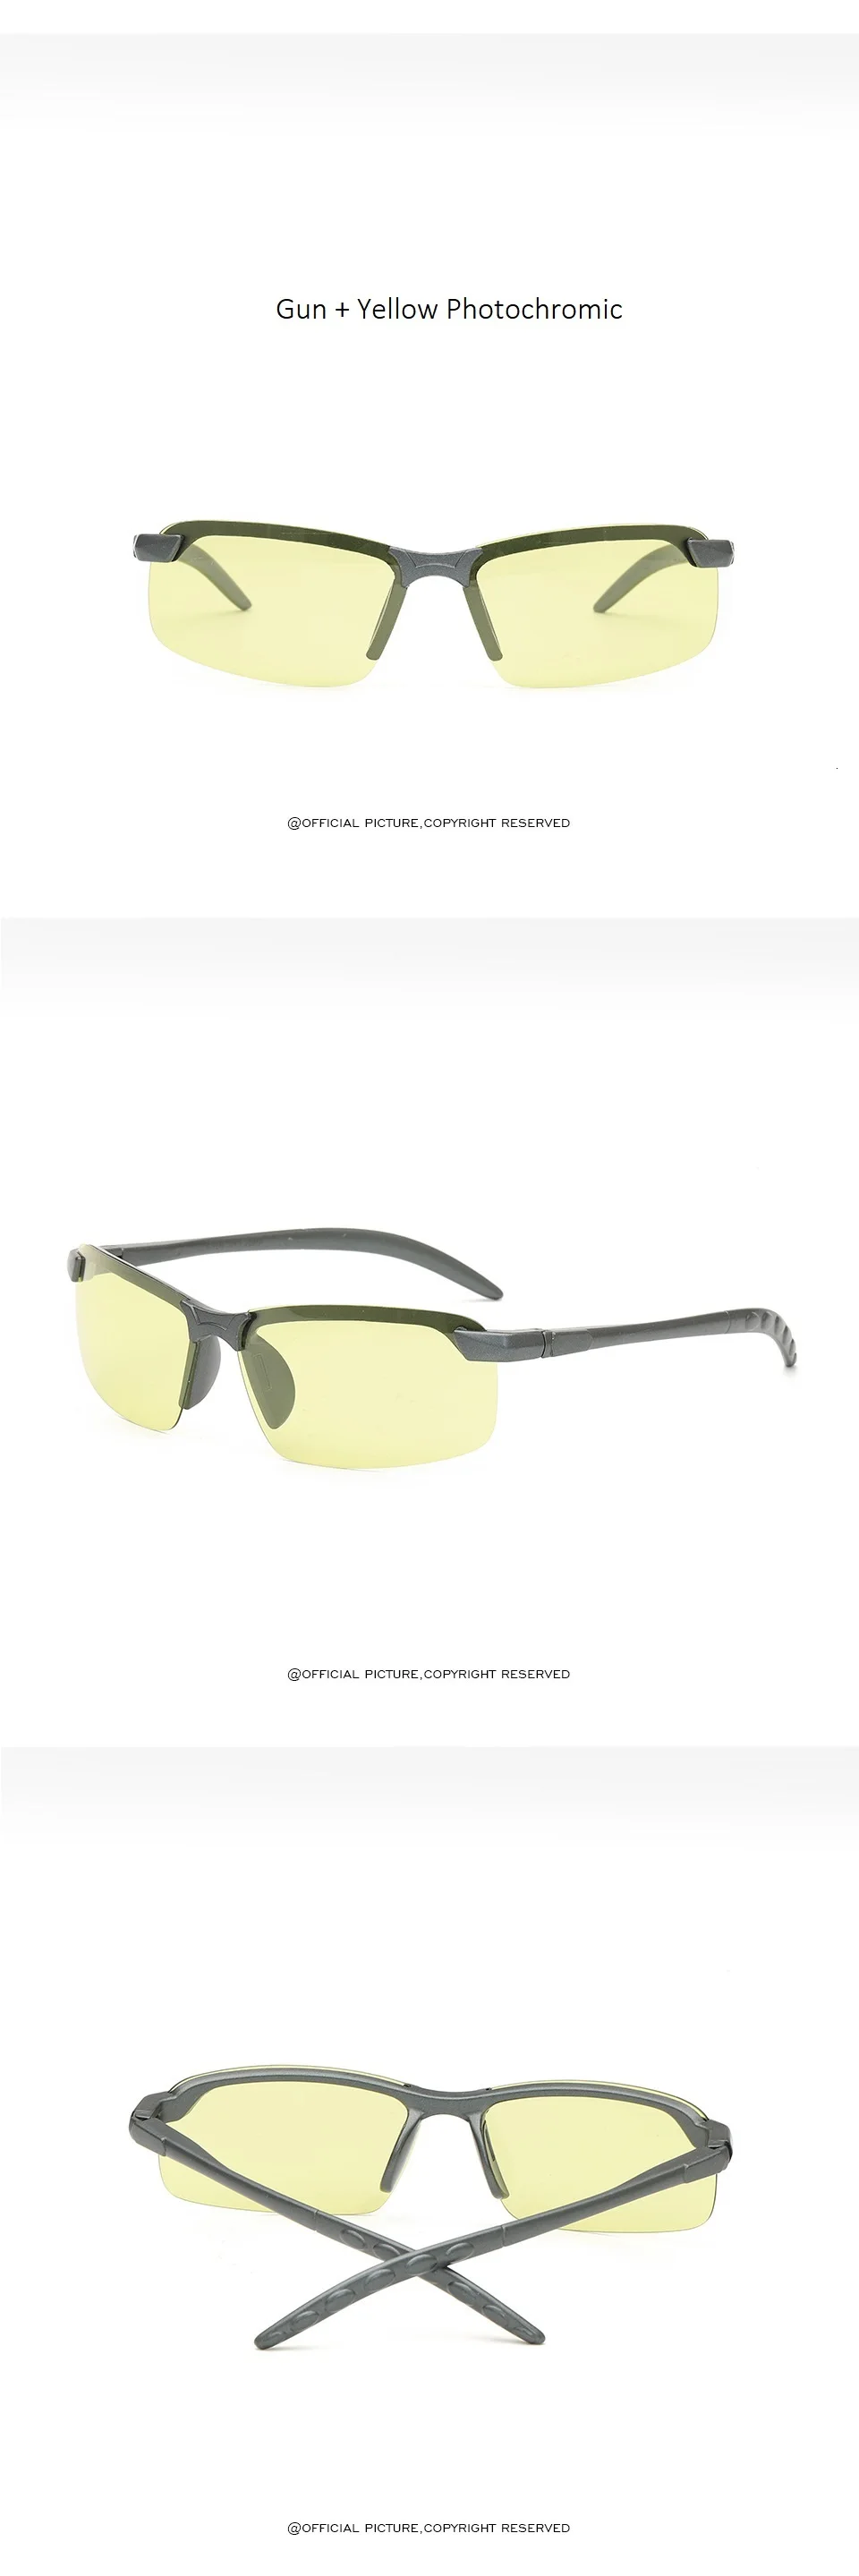 Ультралегкие Модные поляризованные фотохромные солнцезащитные очки для вождения, мужские прямоугольные очки-хамелеоны, солнцезащитные очки для дня и ночного видения